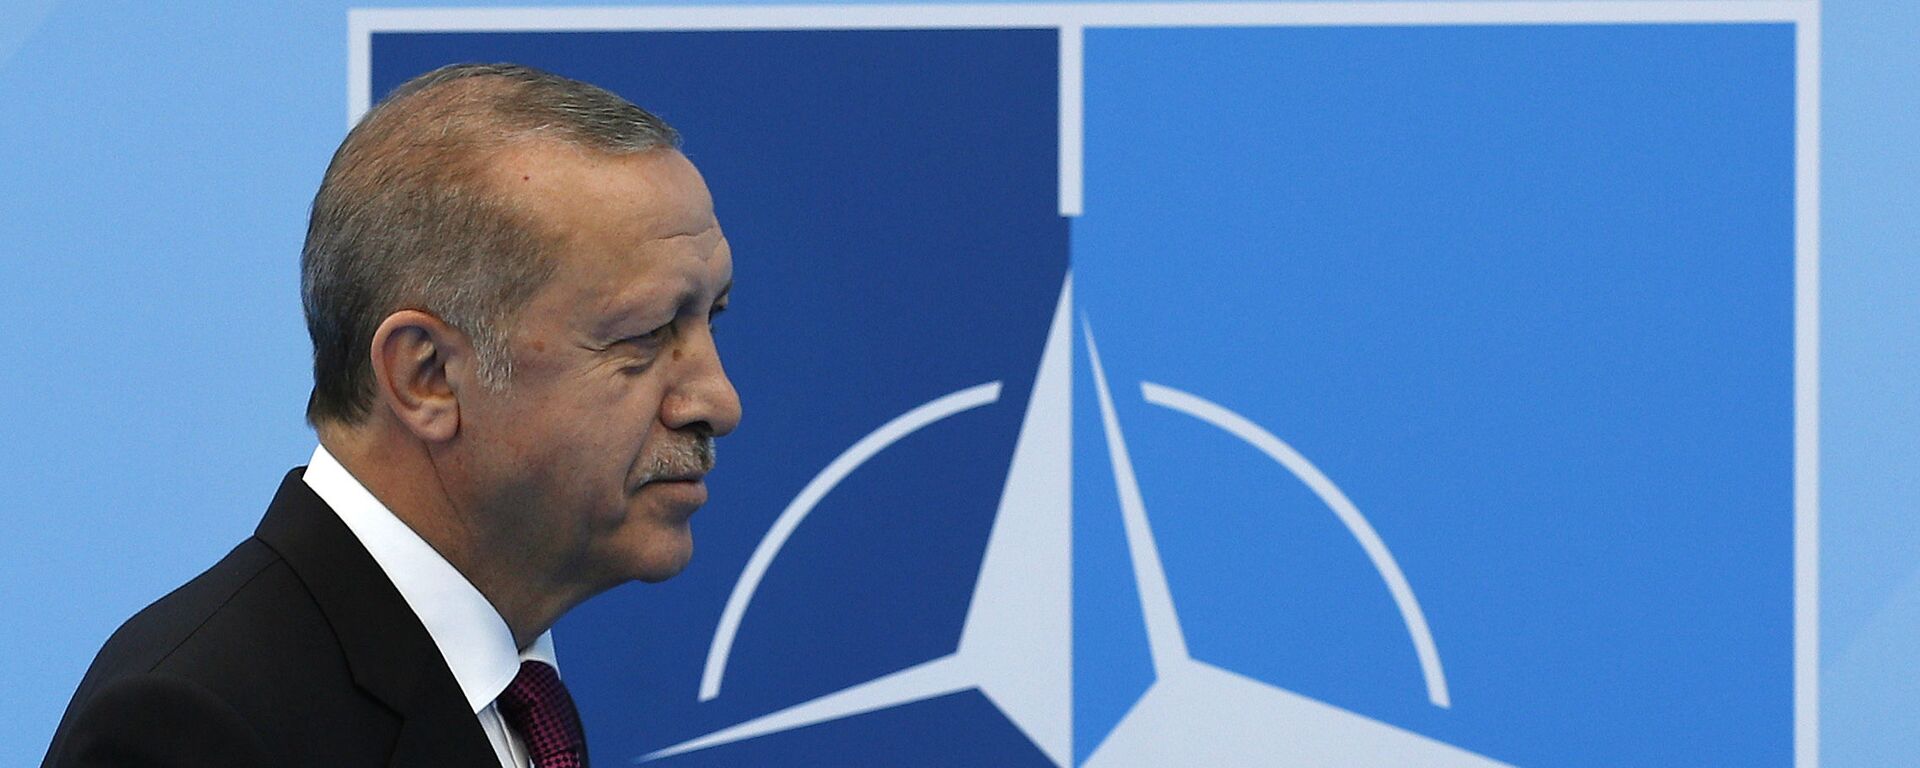 Tổng thống Thổ Nhĩ Kỳ Recep Tayyip Erdogan tại hội nghị thượng đỉnh NATO. - Sputnik Việt Nam, 1920, 01.06.2022